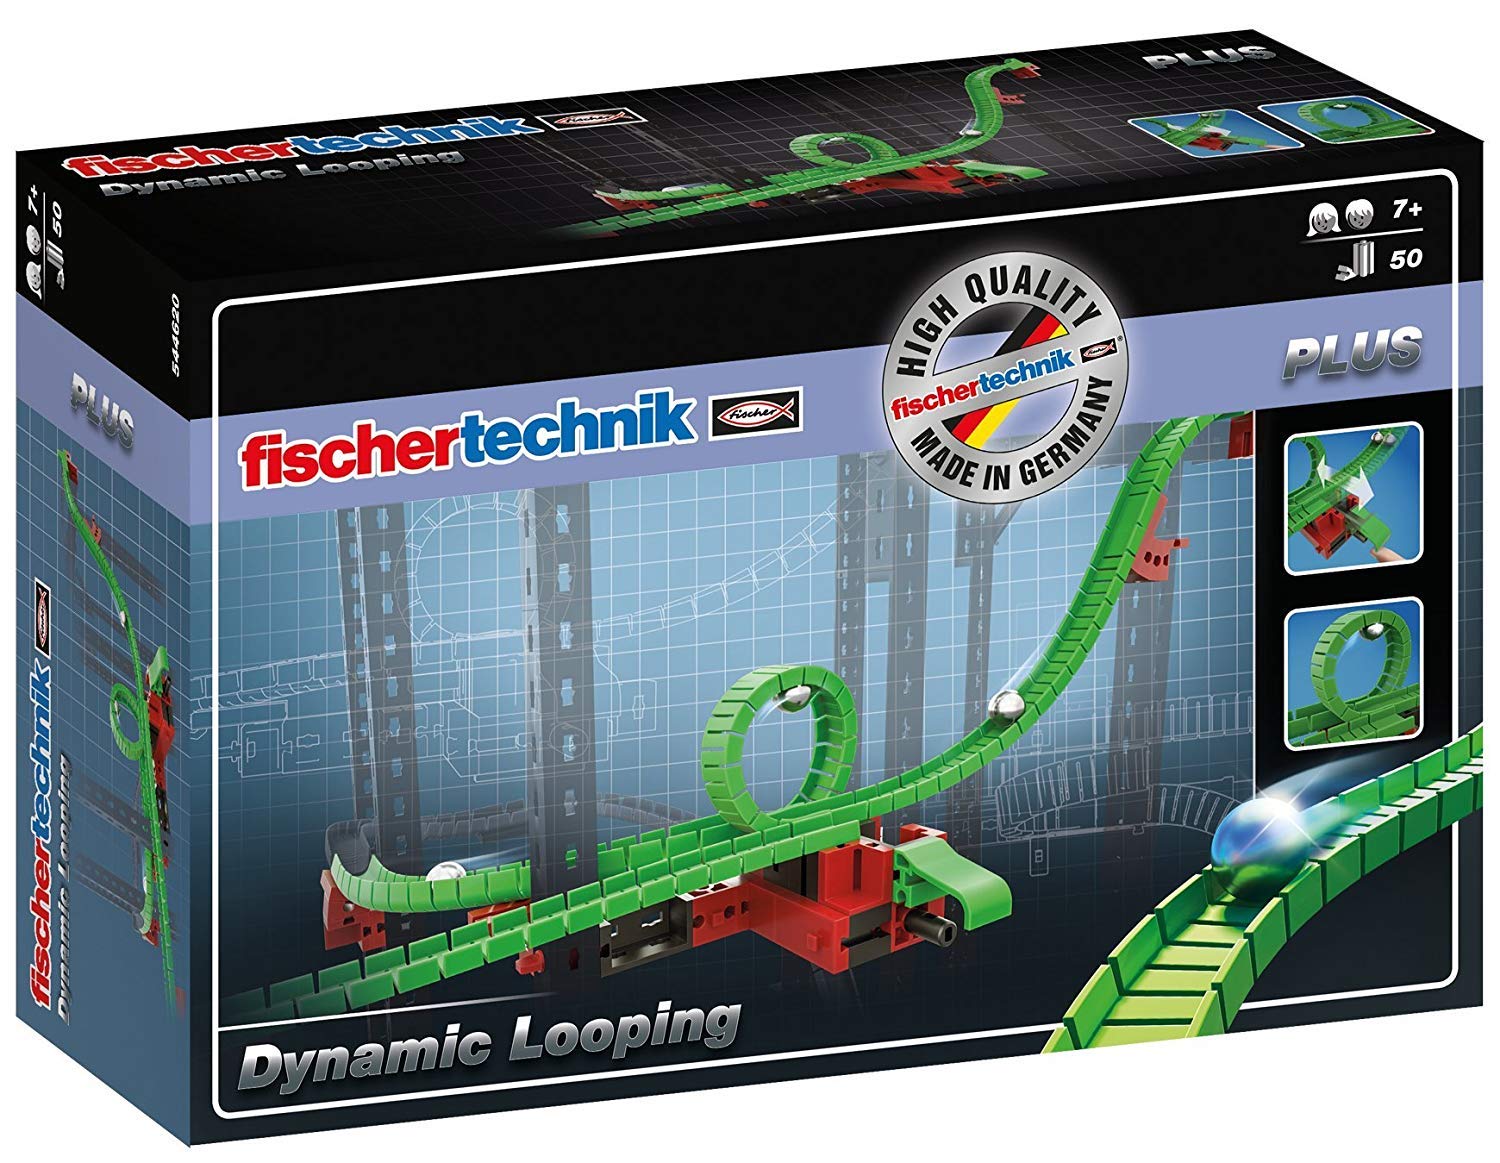 Fischertechnik Looping Building Blocks